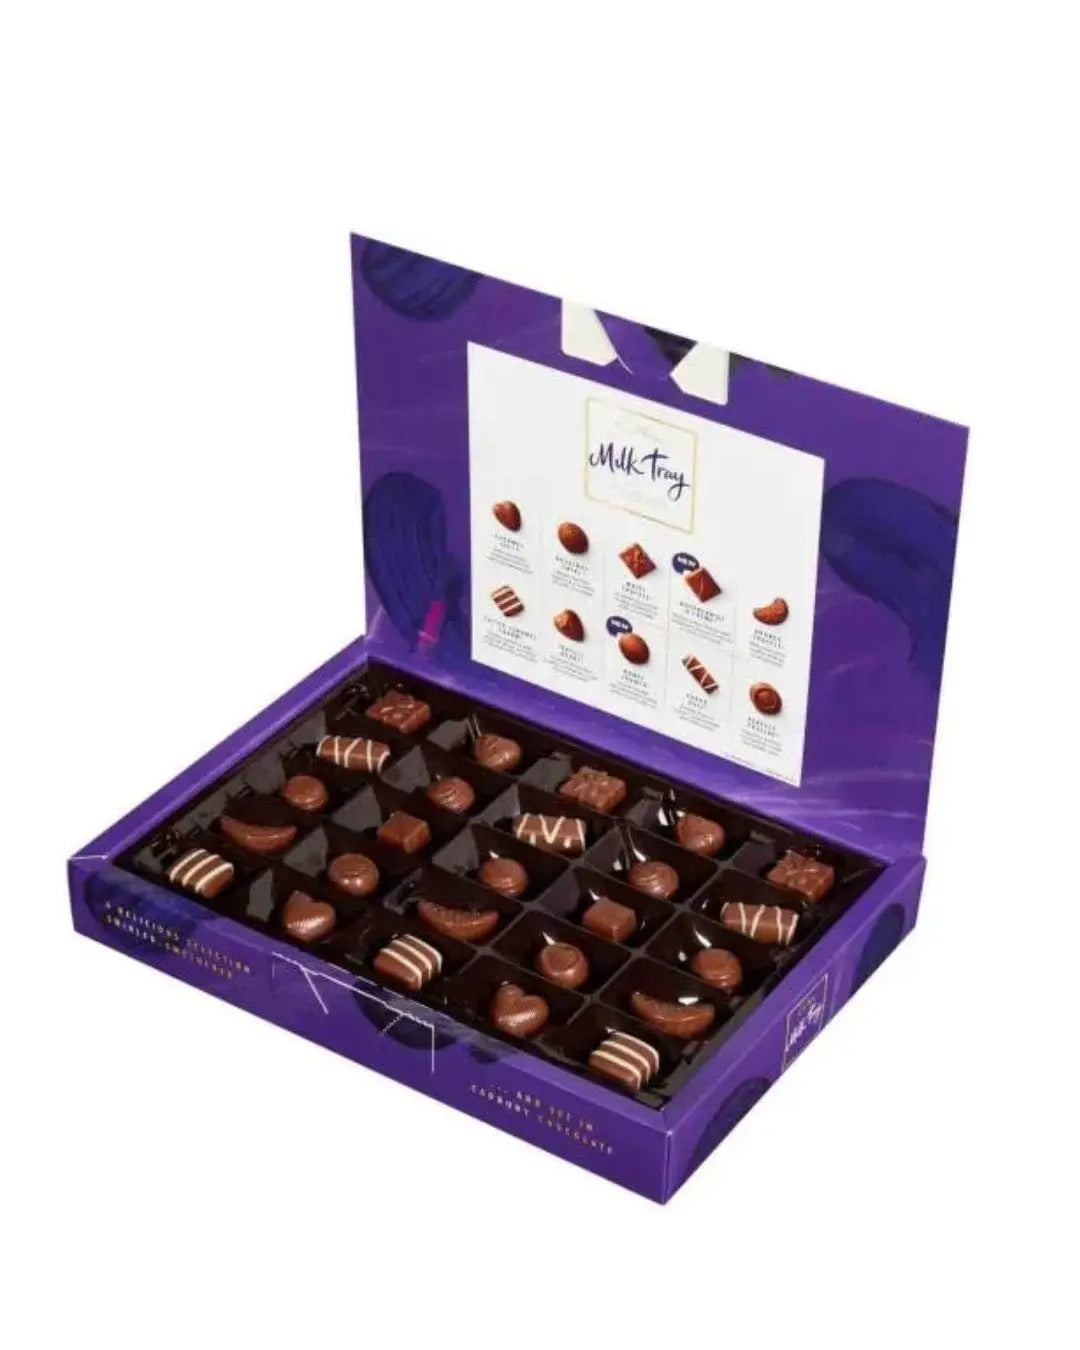 Cadbury Milk Tray Chocolate Gift Box, 530 g Chocolate